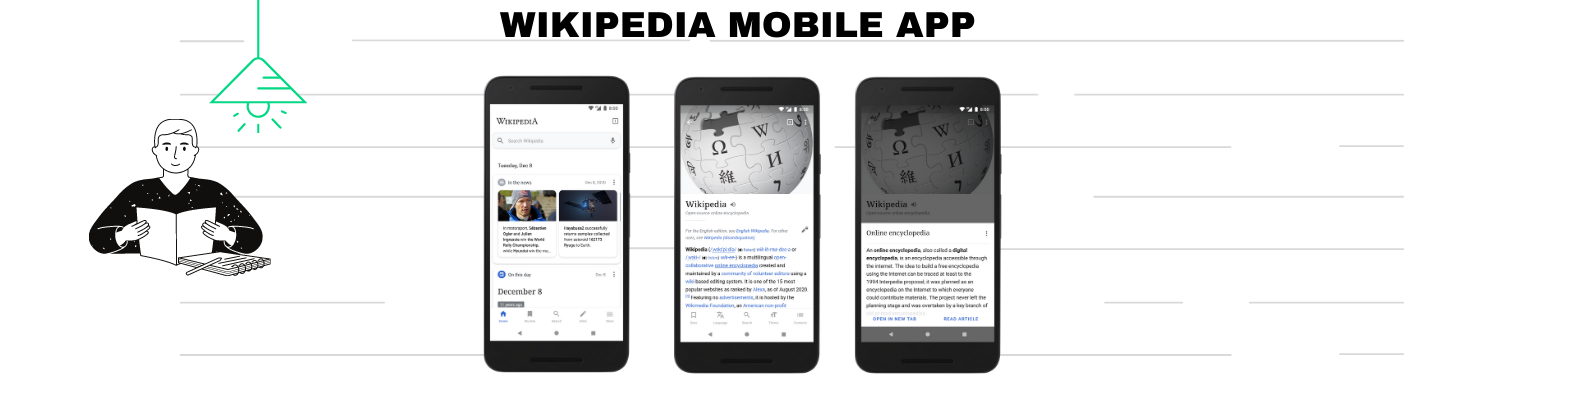 Wikipedia Mobile App Cover